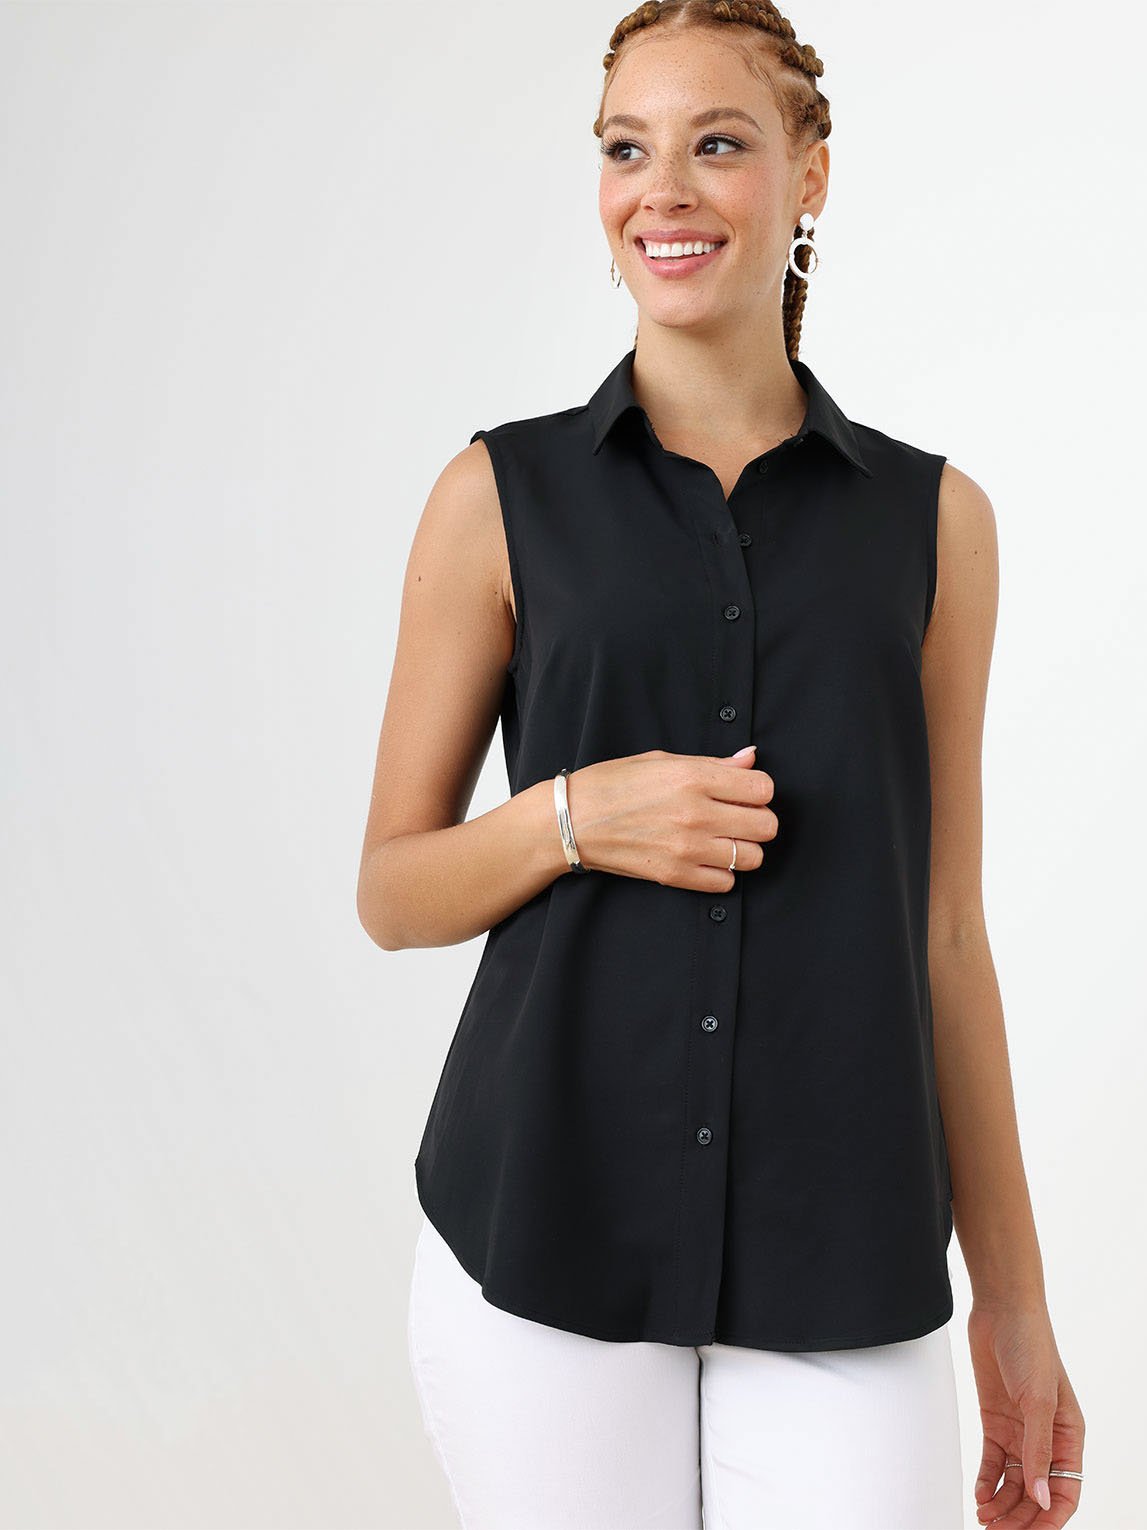 Buy Women's Sleeveless Shirts Online